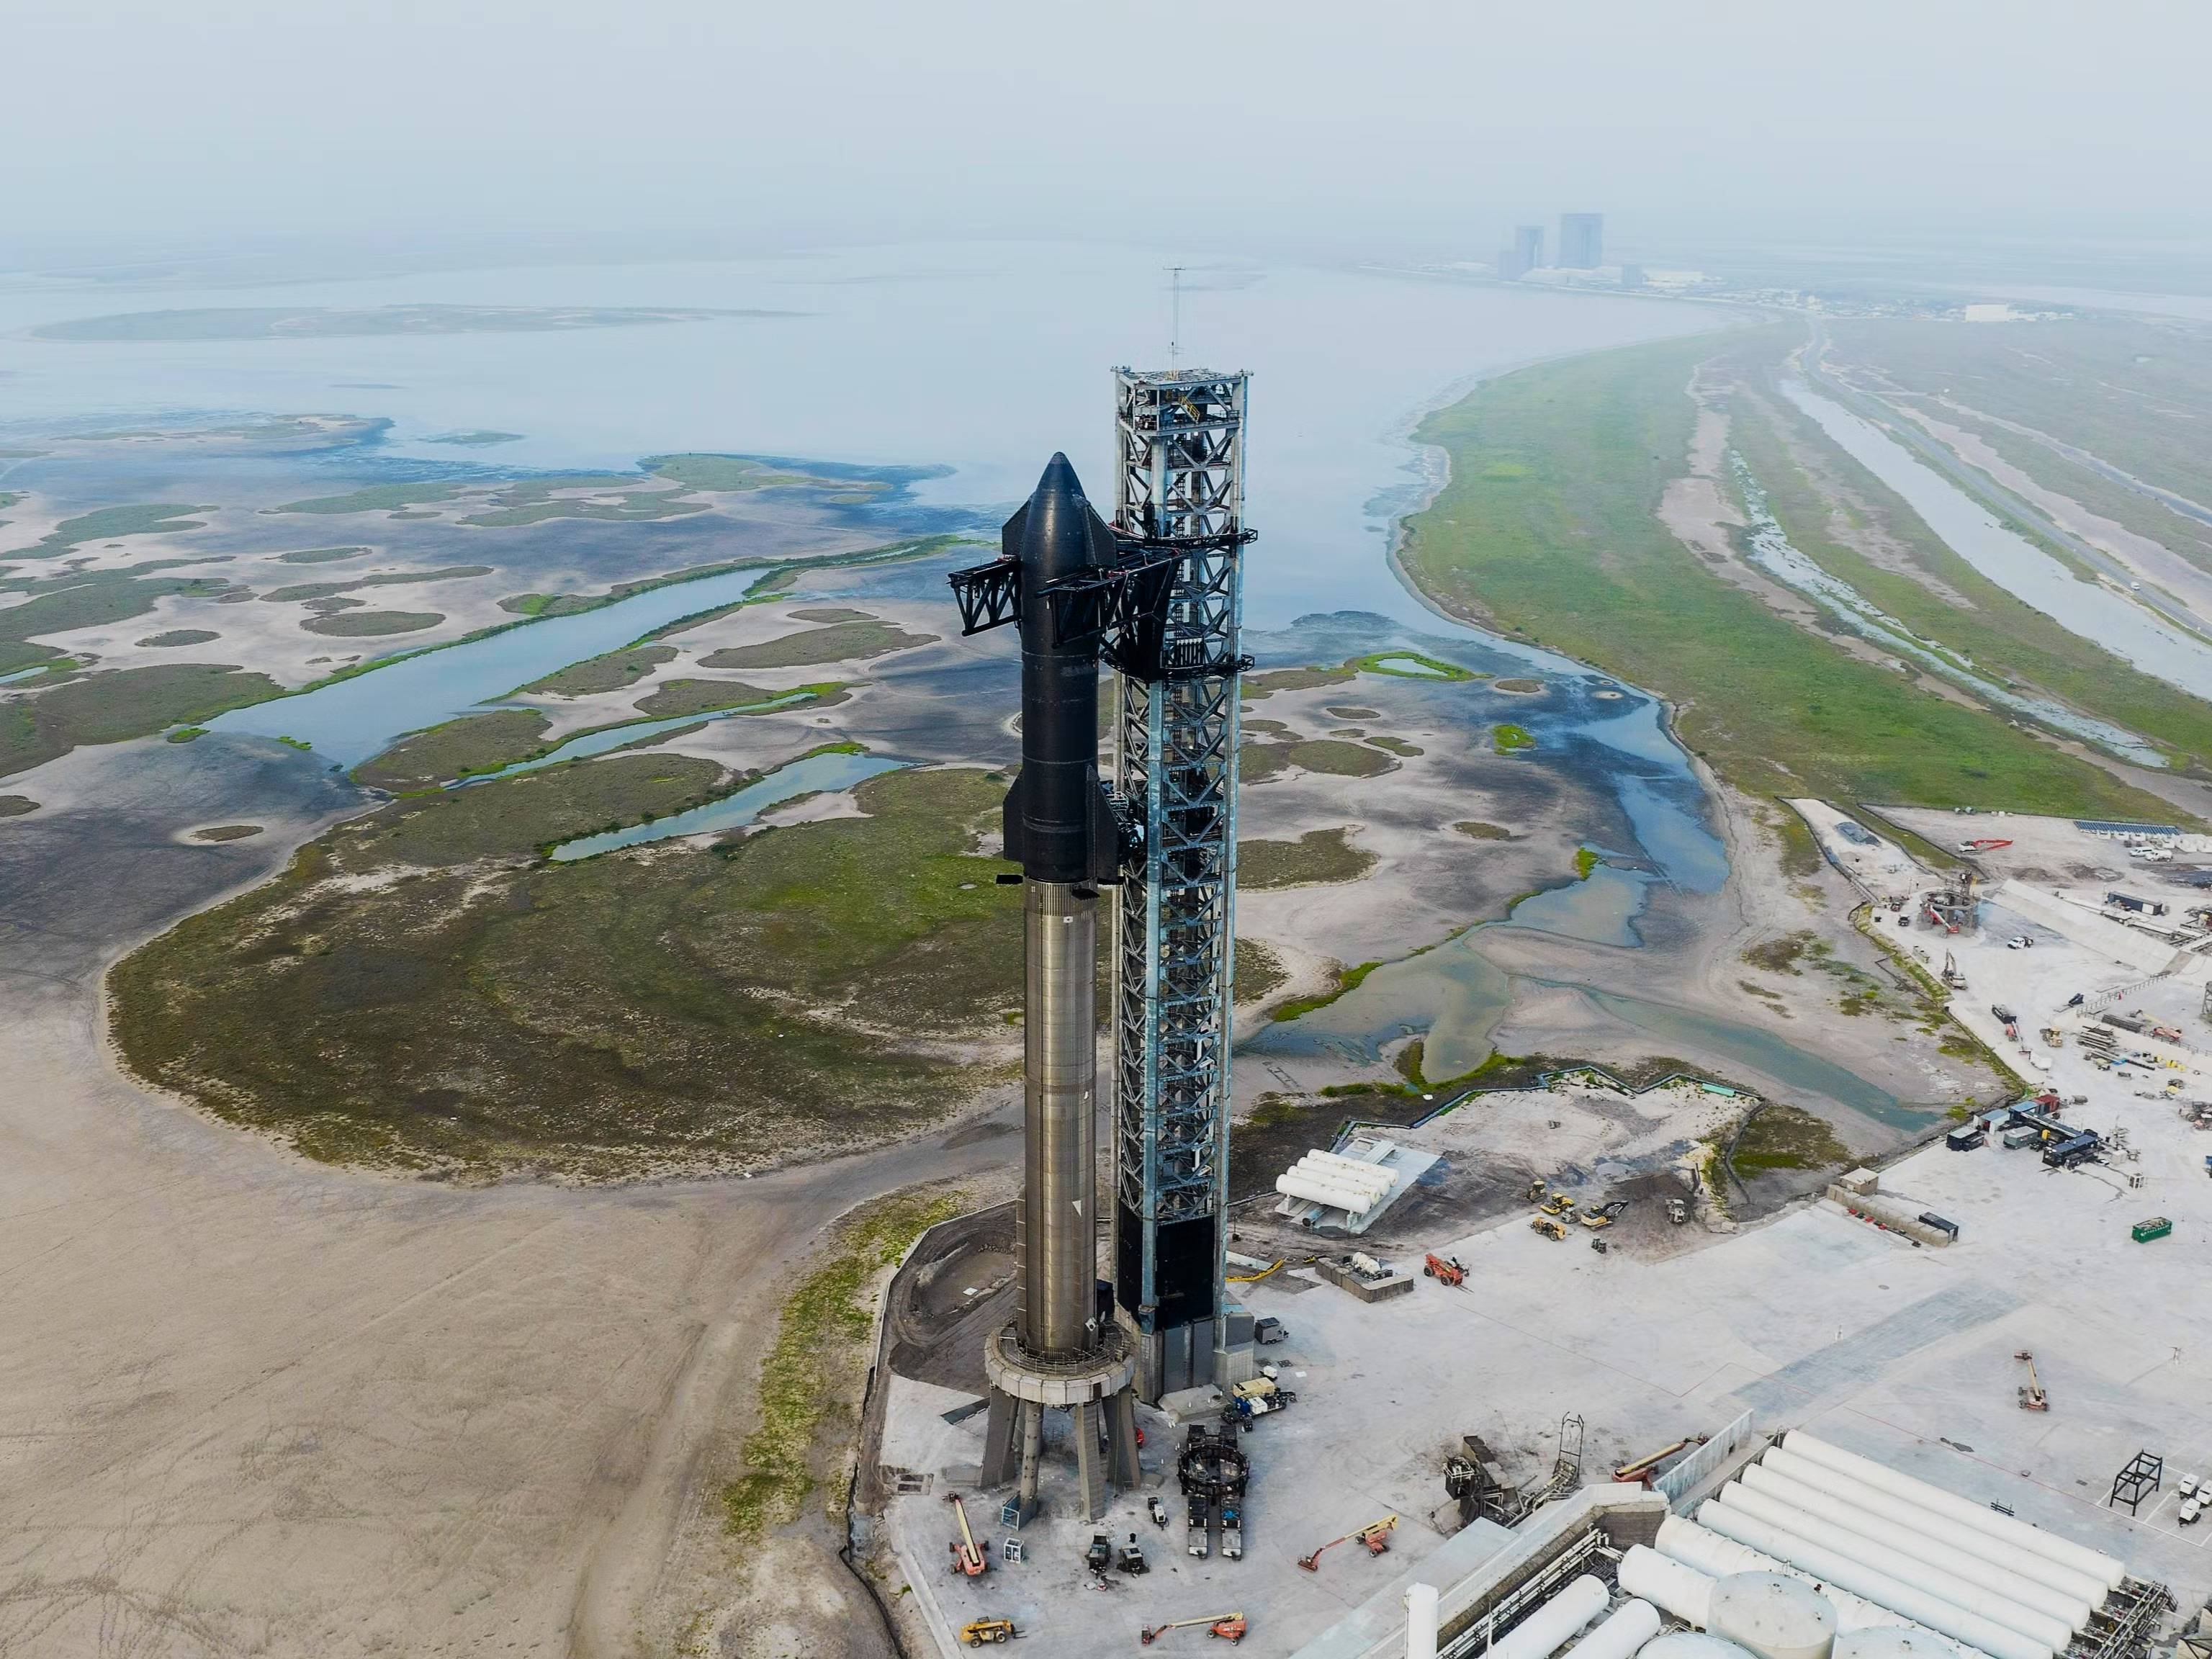 星舰准备发射！马斯克发推表示SpaceX即将进行星舰首次入轨测试 - 哔哩哔哩